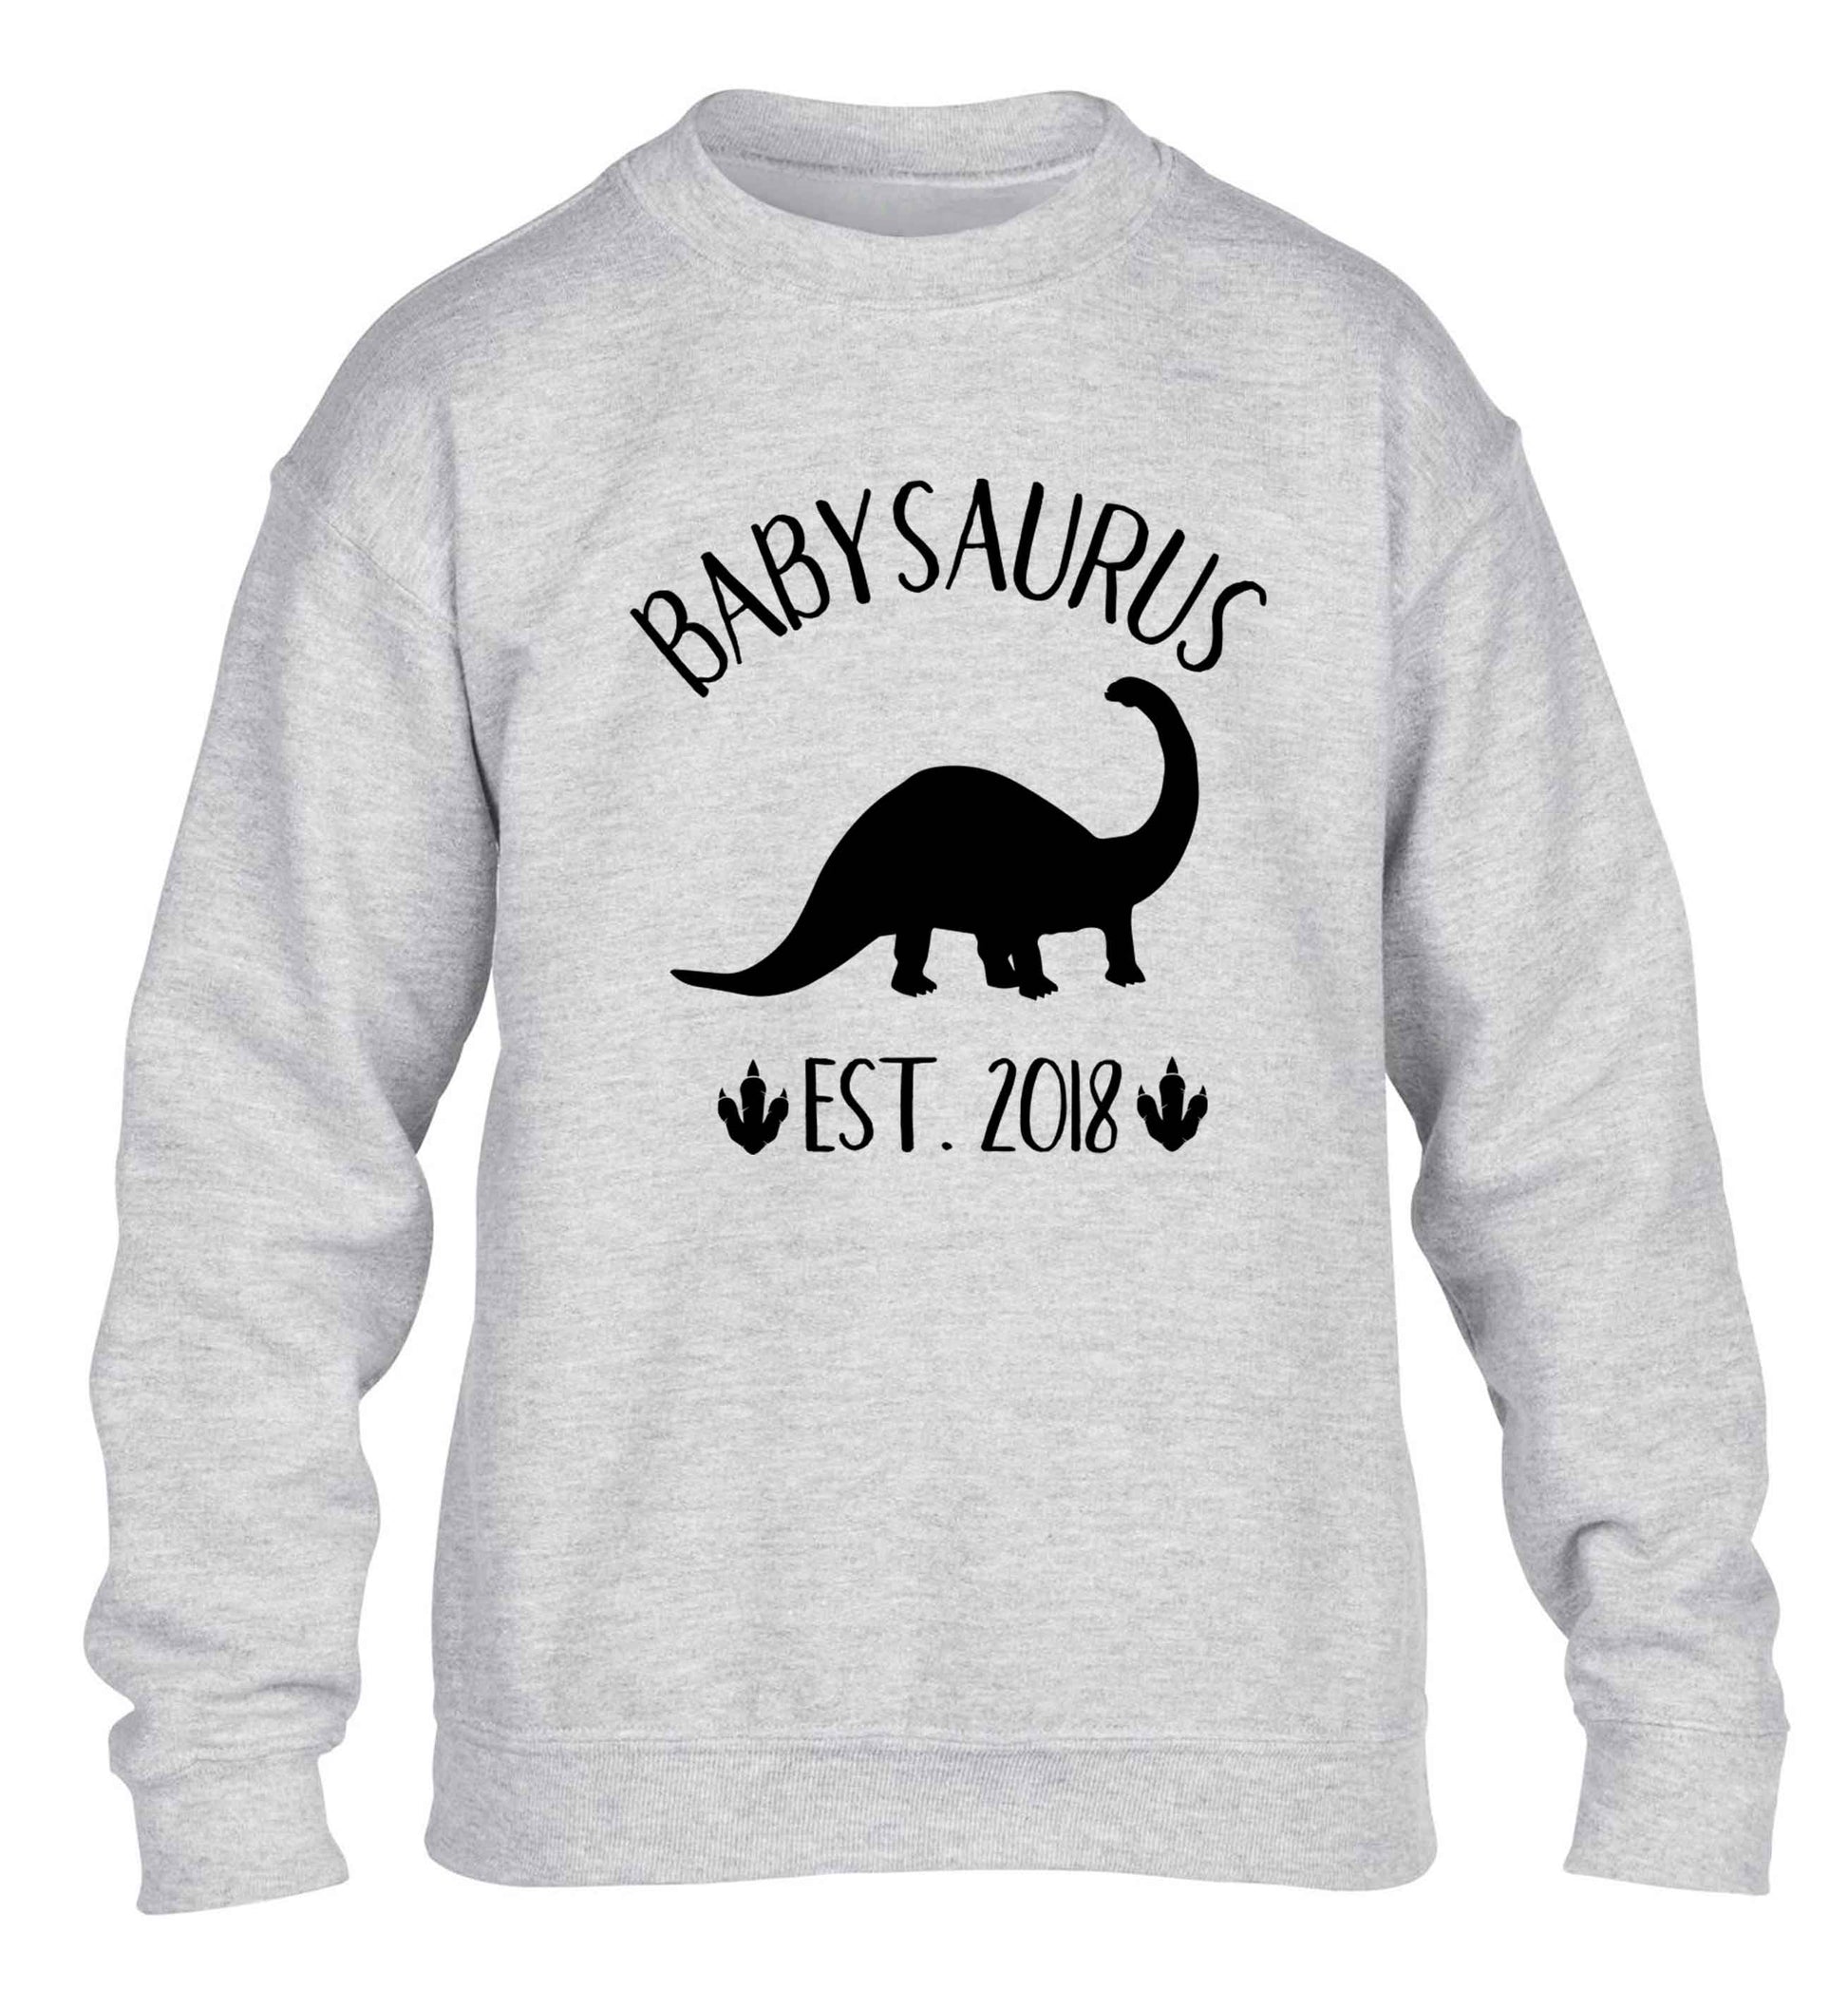 Personalised babysaurus since (custom date) children's grey sweater 12-13 Years